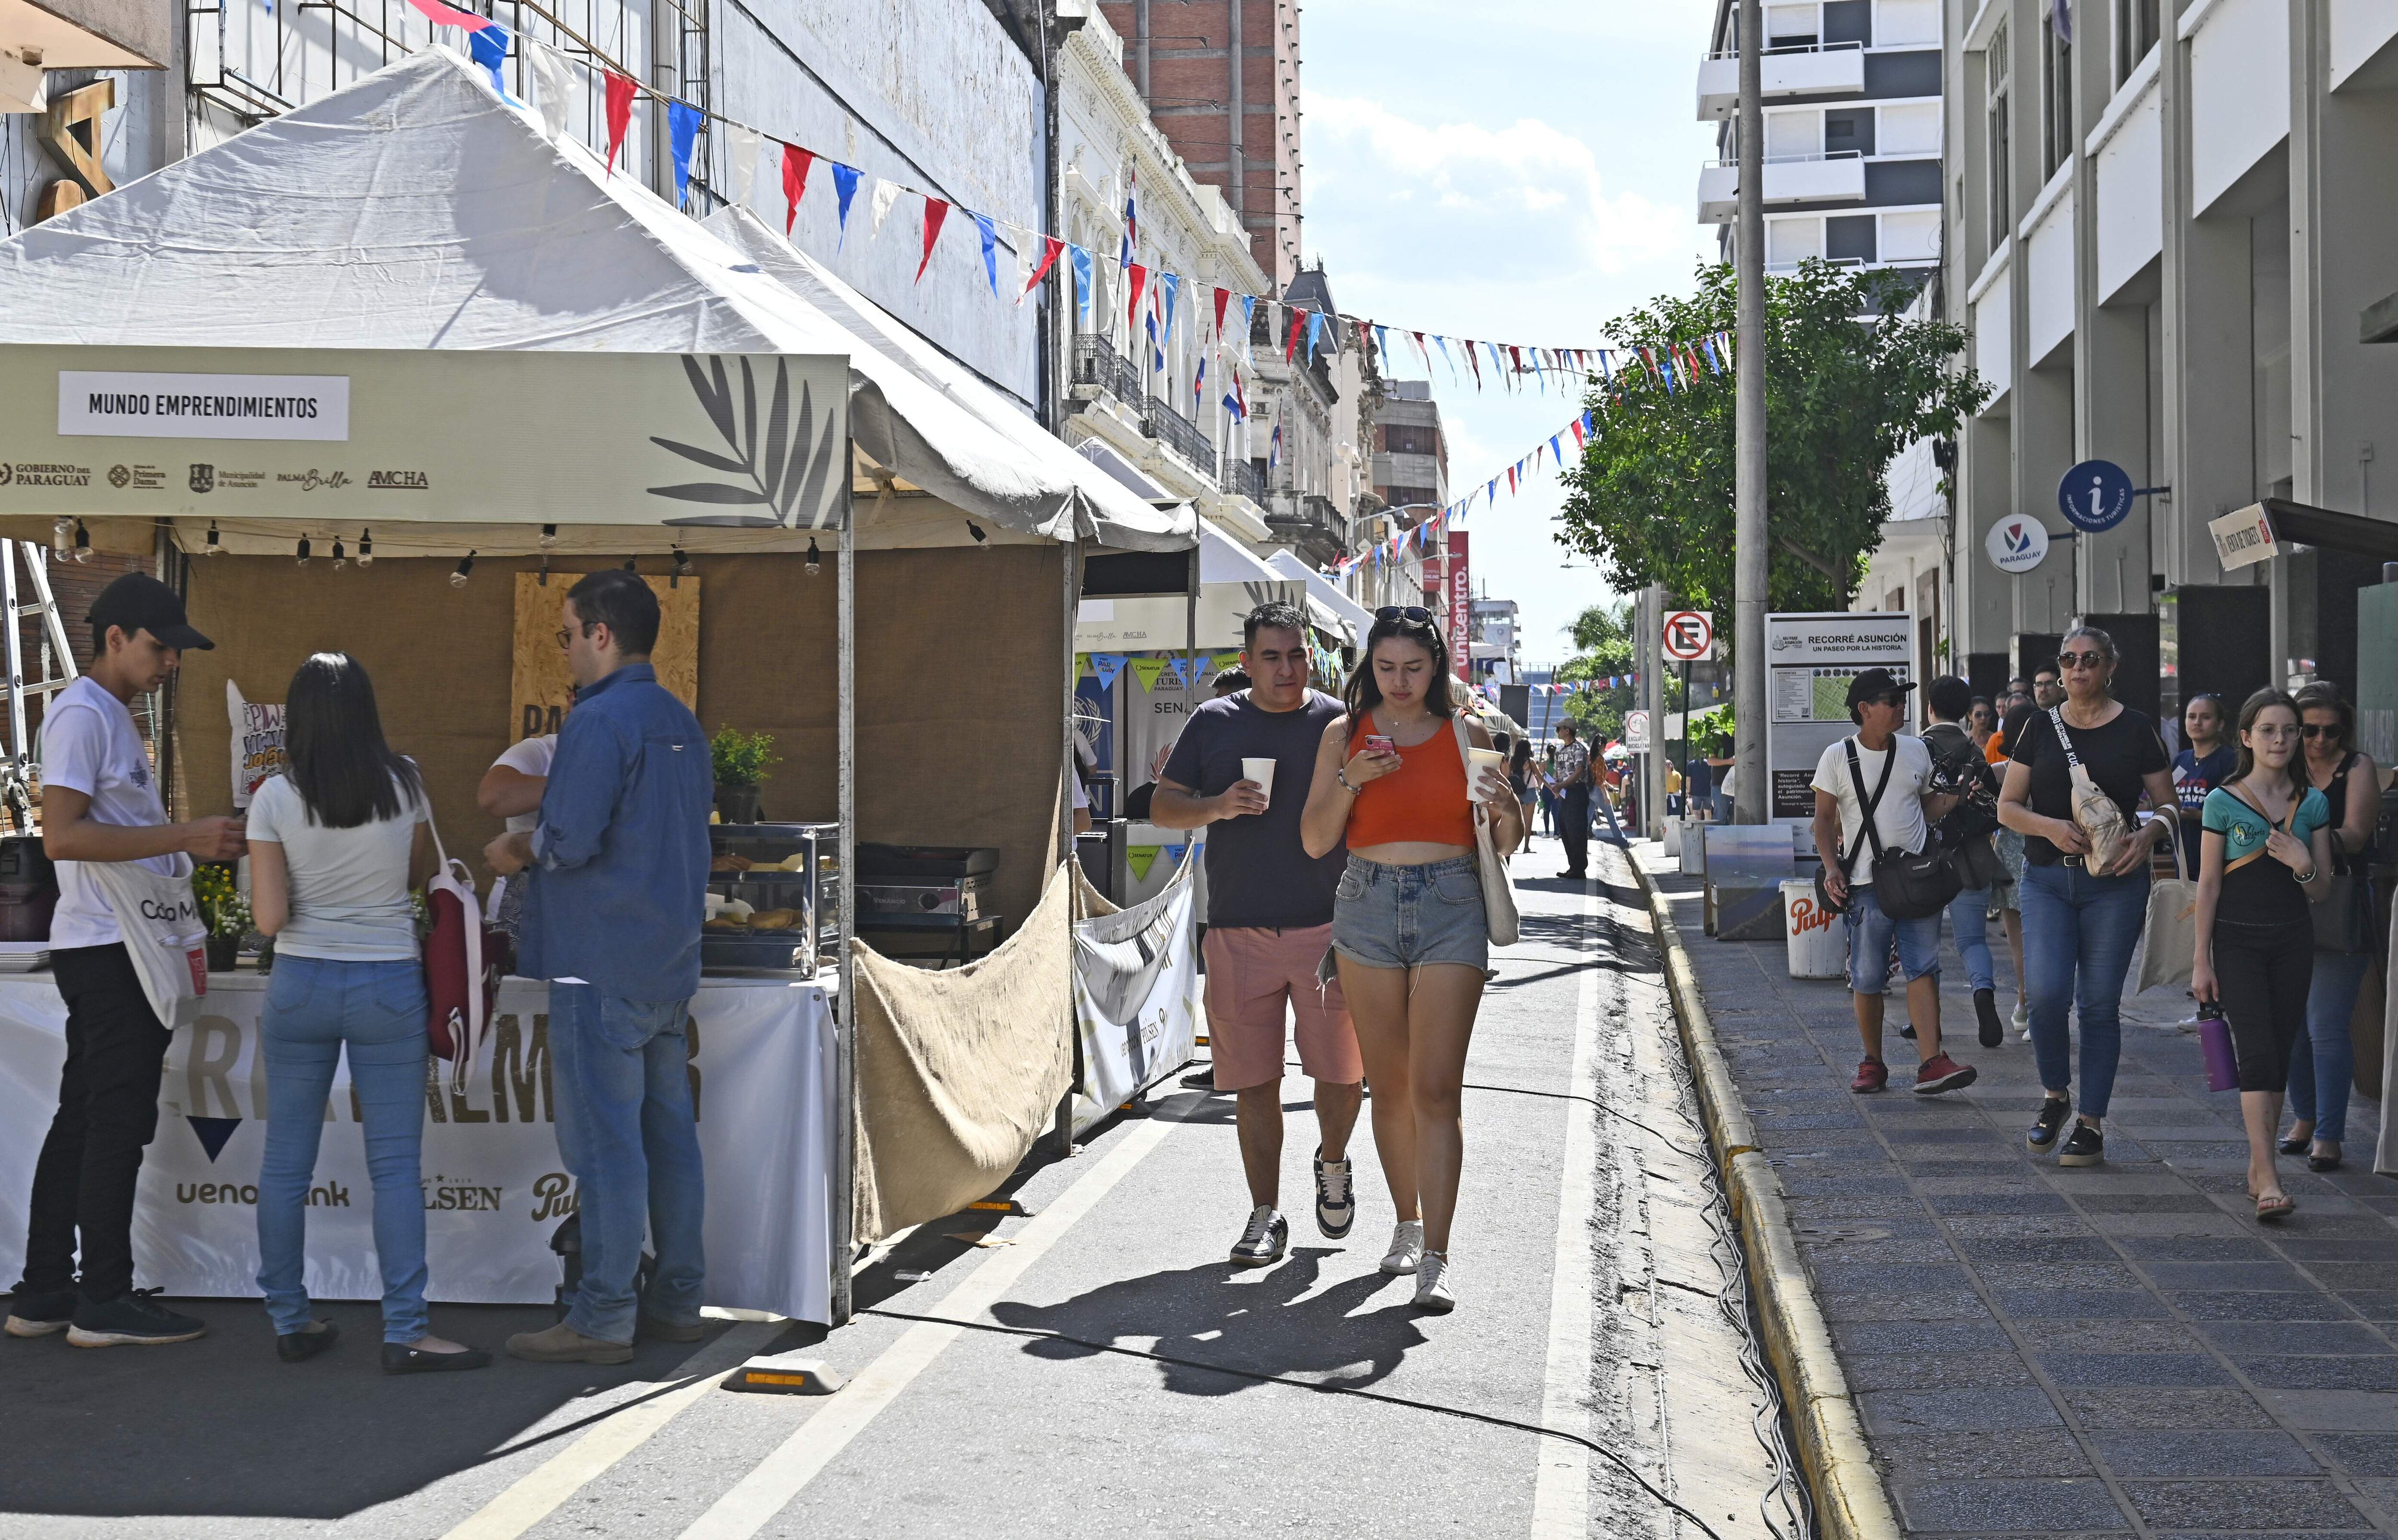 La Feria Palmear presenta diferentes stands de artesanía y gastronomía a lo largo de cuatro cuadras. La actividad es de acceso libre y gratuito.